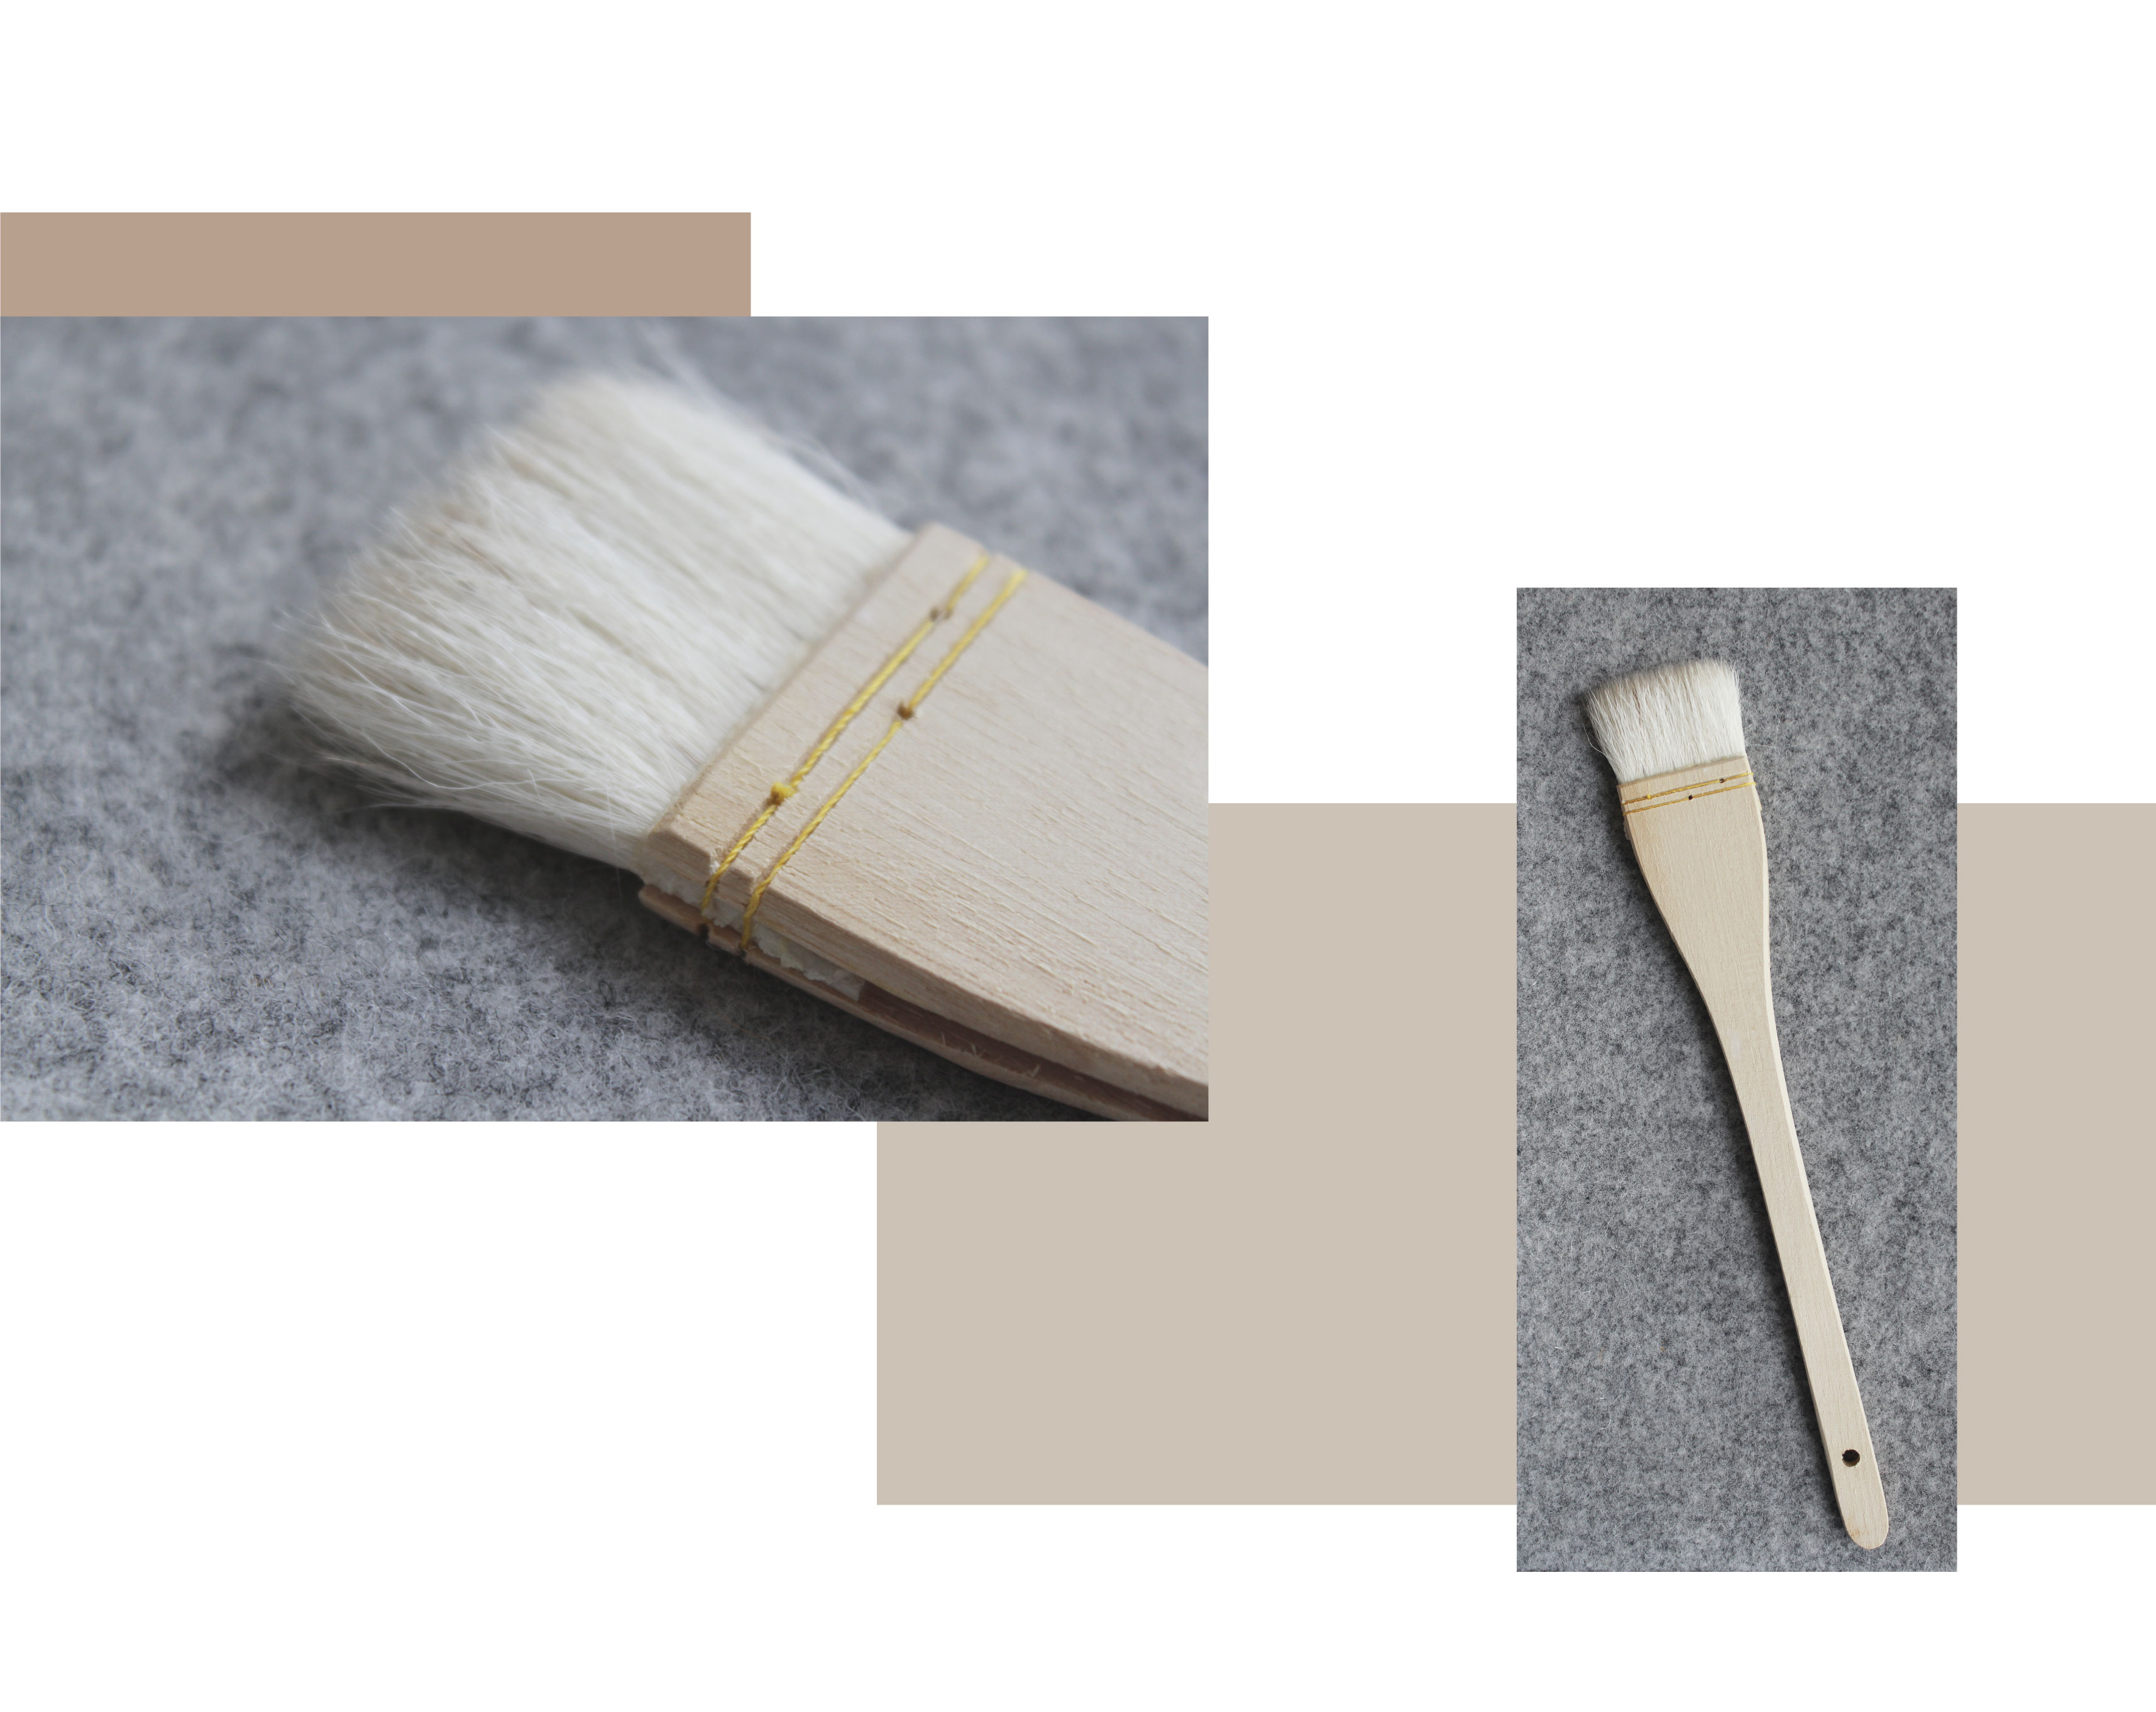 twee beelden, een shwing een close-up van een heek glazuur borstel op een grijze achtergrond. De tweede toont de volledige heekborstel. Houten handvat, stiksels, vezelige borstel.